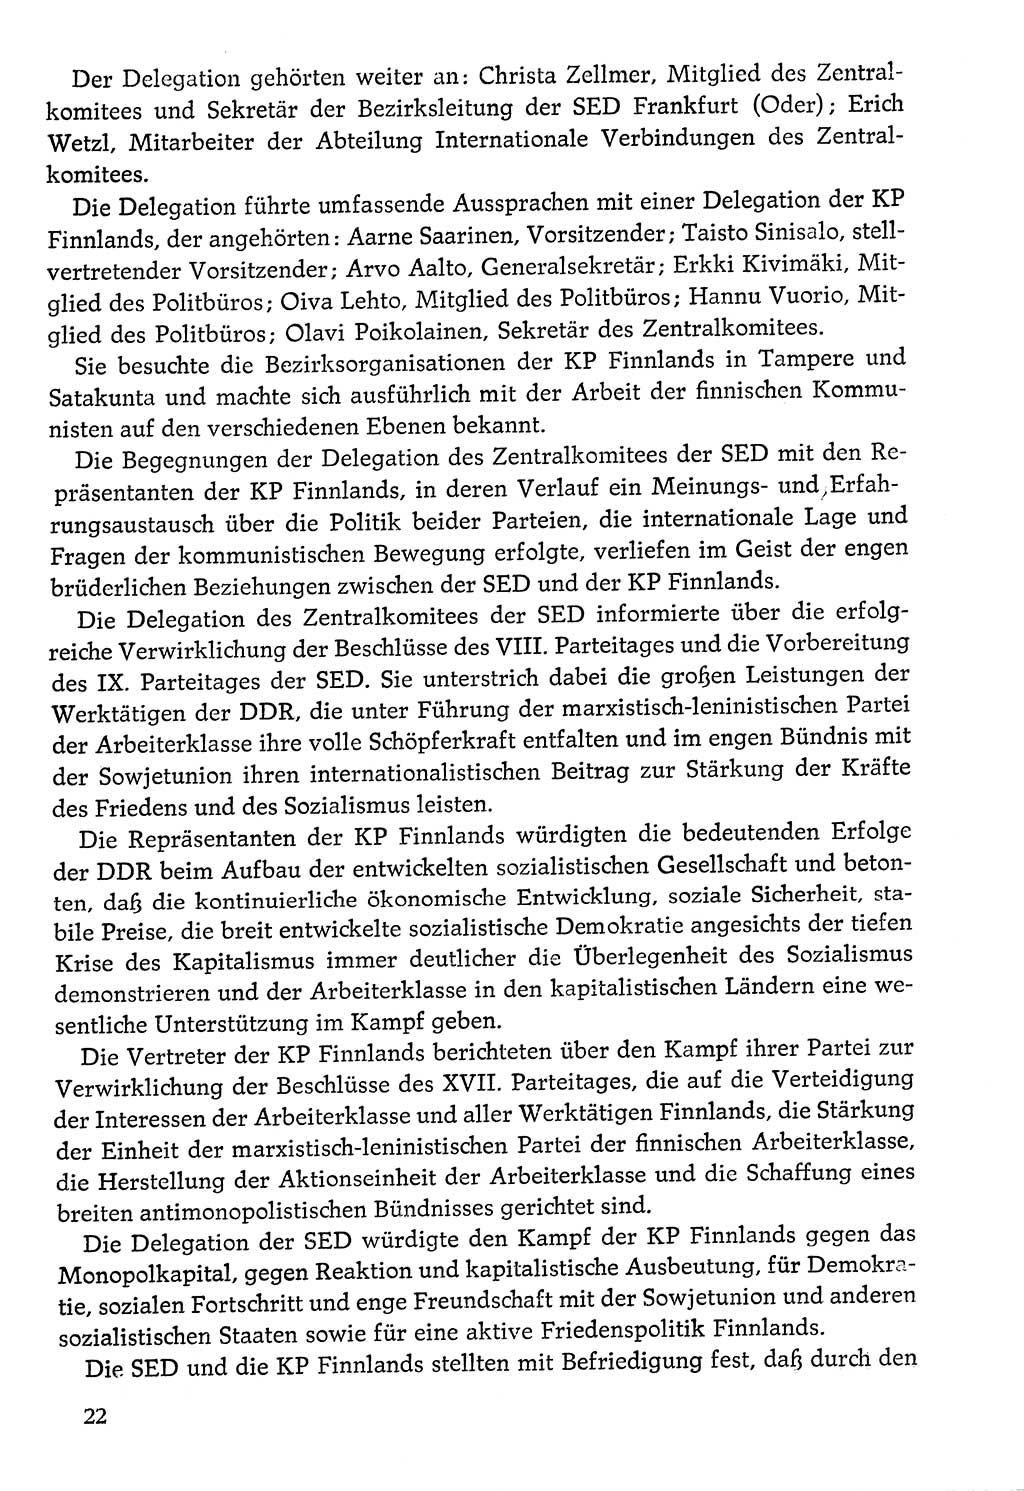 Dokumente der Sozialistischen Einheitspartei Deutschlands (SED) [Deutsche Demokratische Republik (DDR)] 1976-1977, Seite 22 (Dok. SED DDR 1976-1977, S. 22)